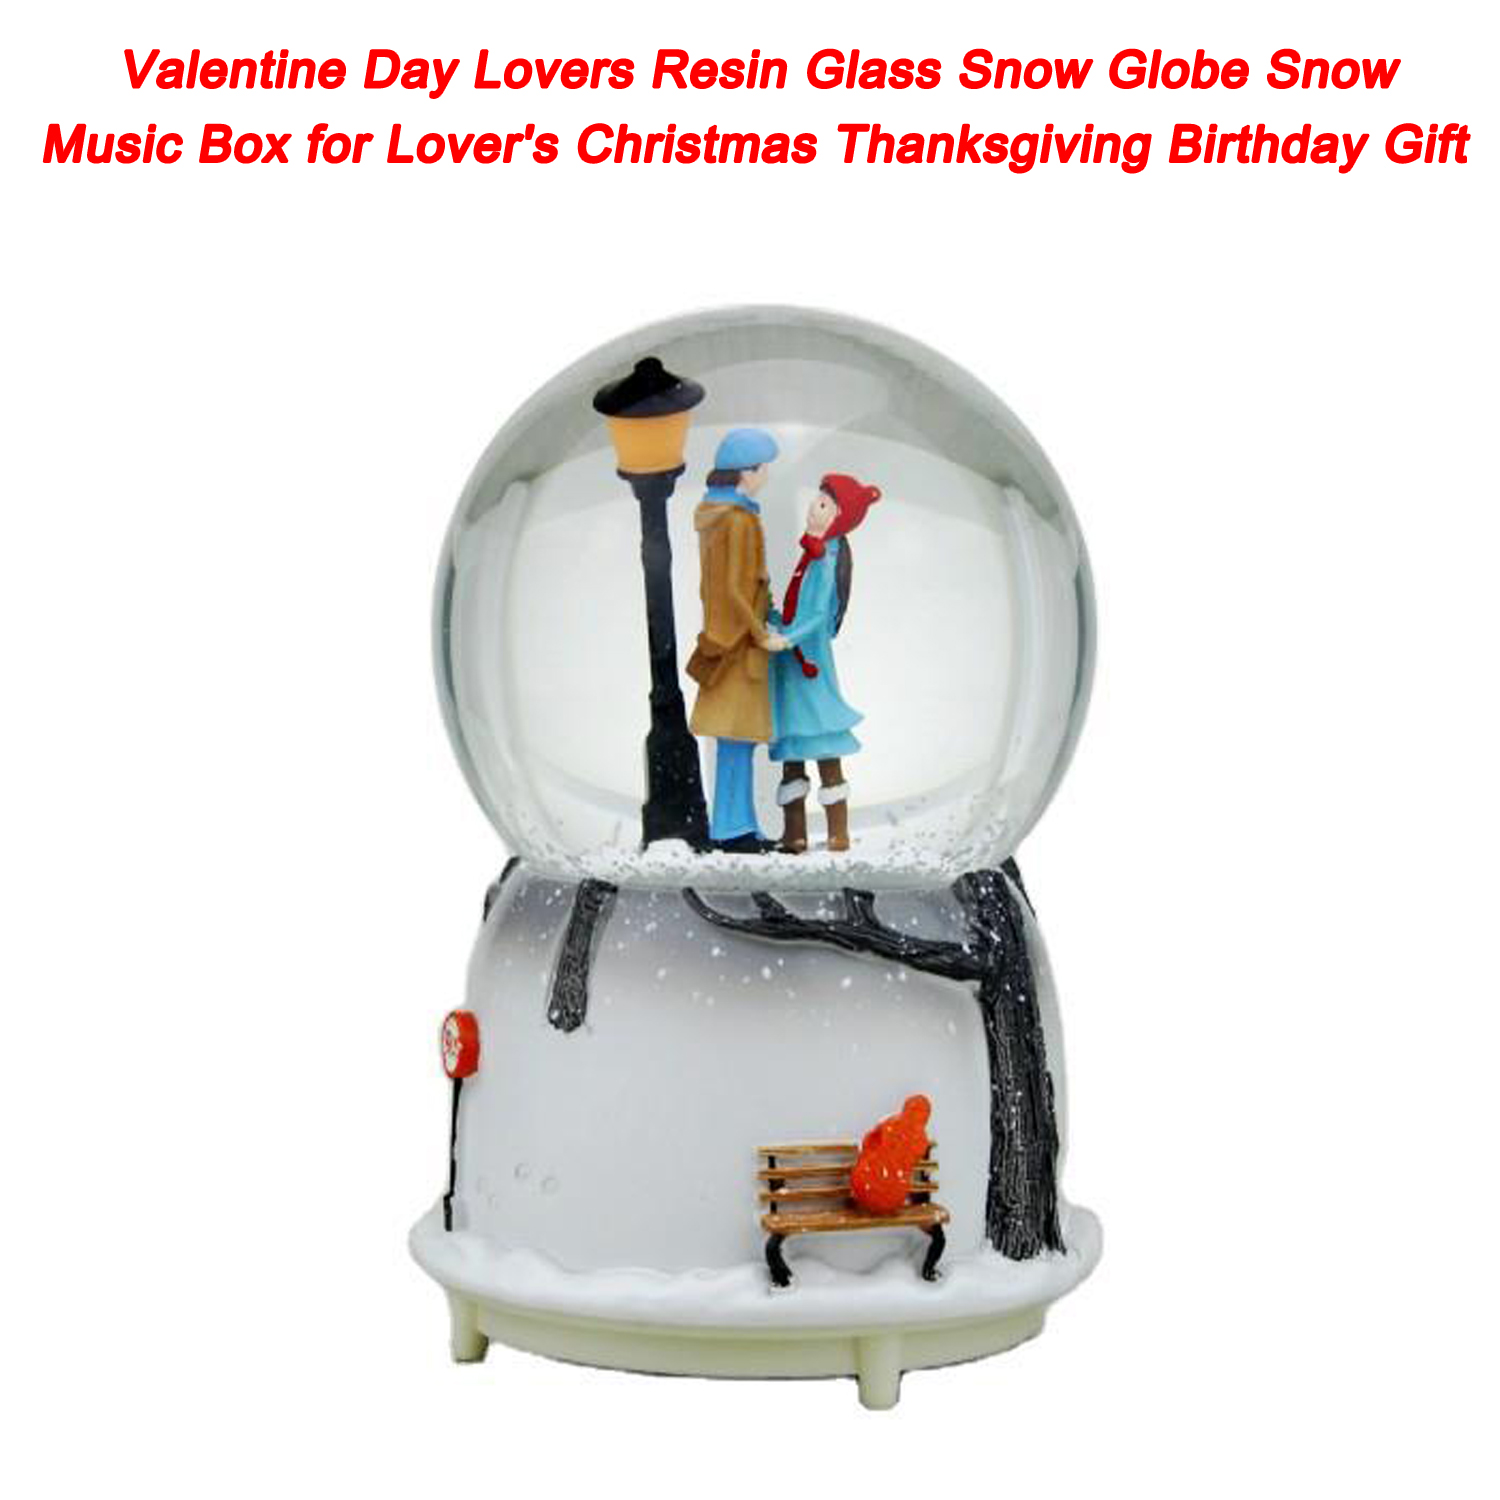 Caja de música de nieve con globo de nieve de cristal de resina para amantes del Día de San Valentín para el regalo de cumpleaños de Acción de Gracias de Navidad de los amantes